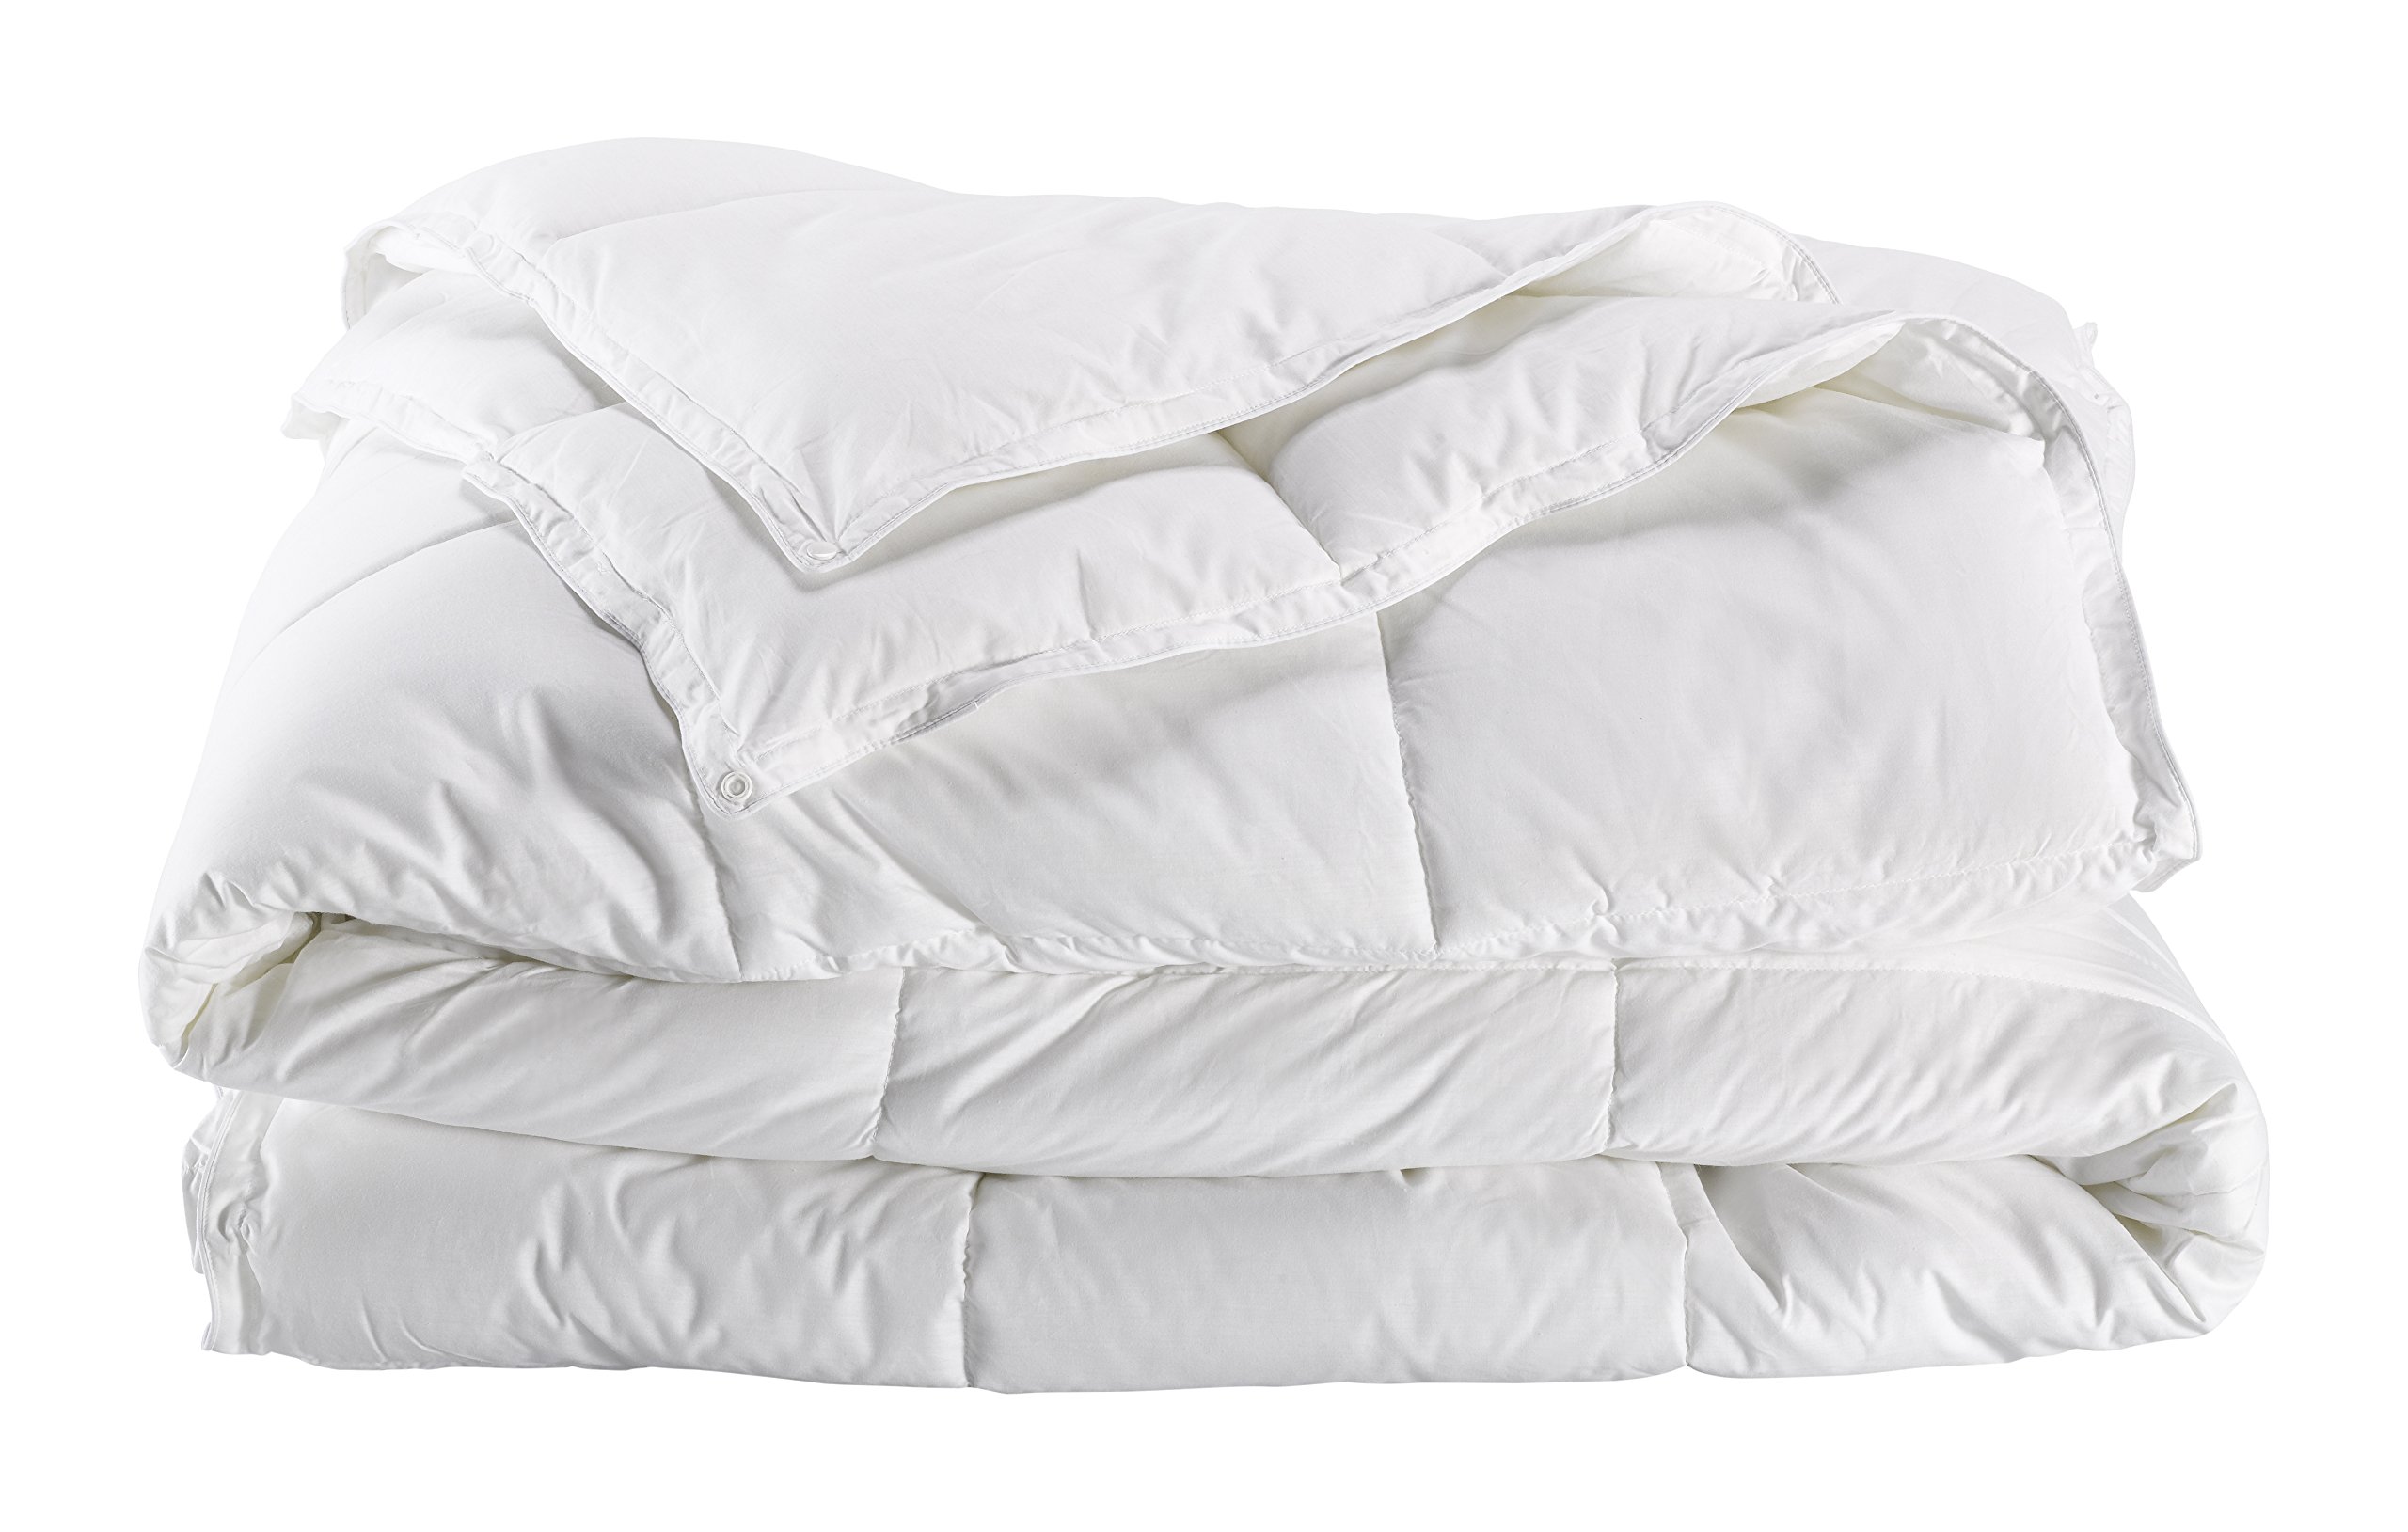 De Witte Lietaer 191672 Dream Bettbezug Perkal-Baumwolle weiß, weiß, 240 x 220 cm